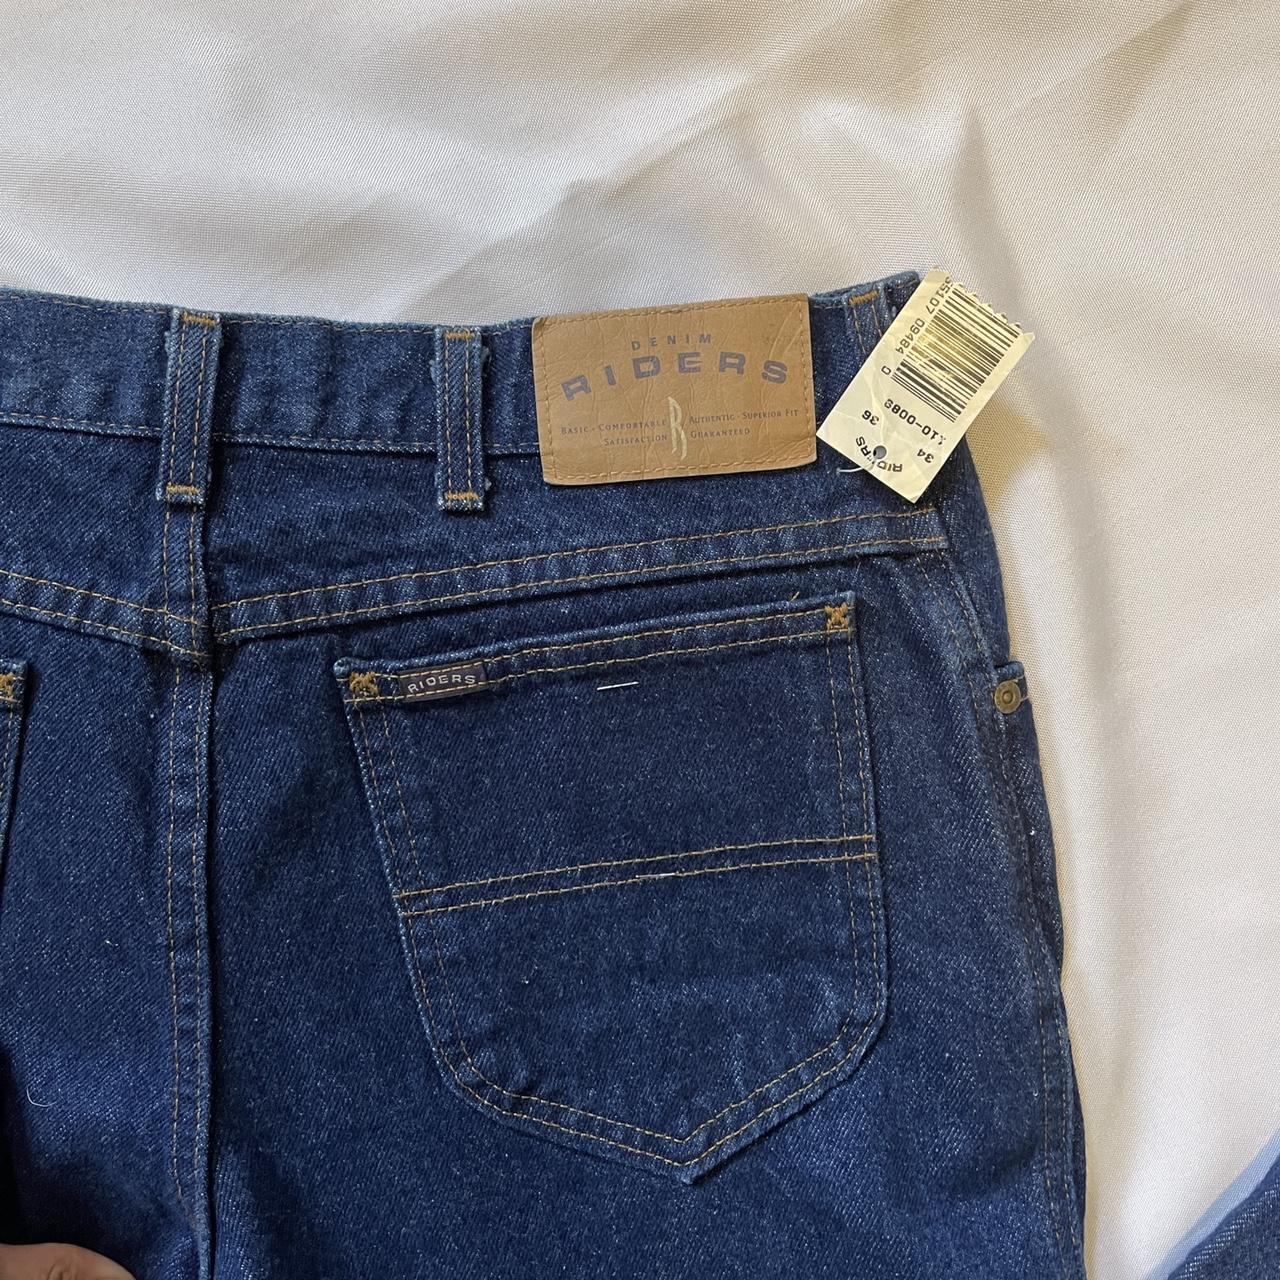 Mens vintage Denim Riders Jeans by Lee size... - Depop